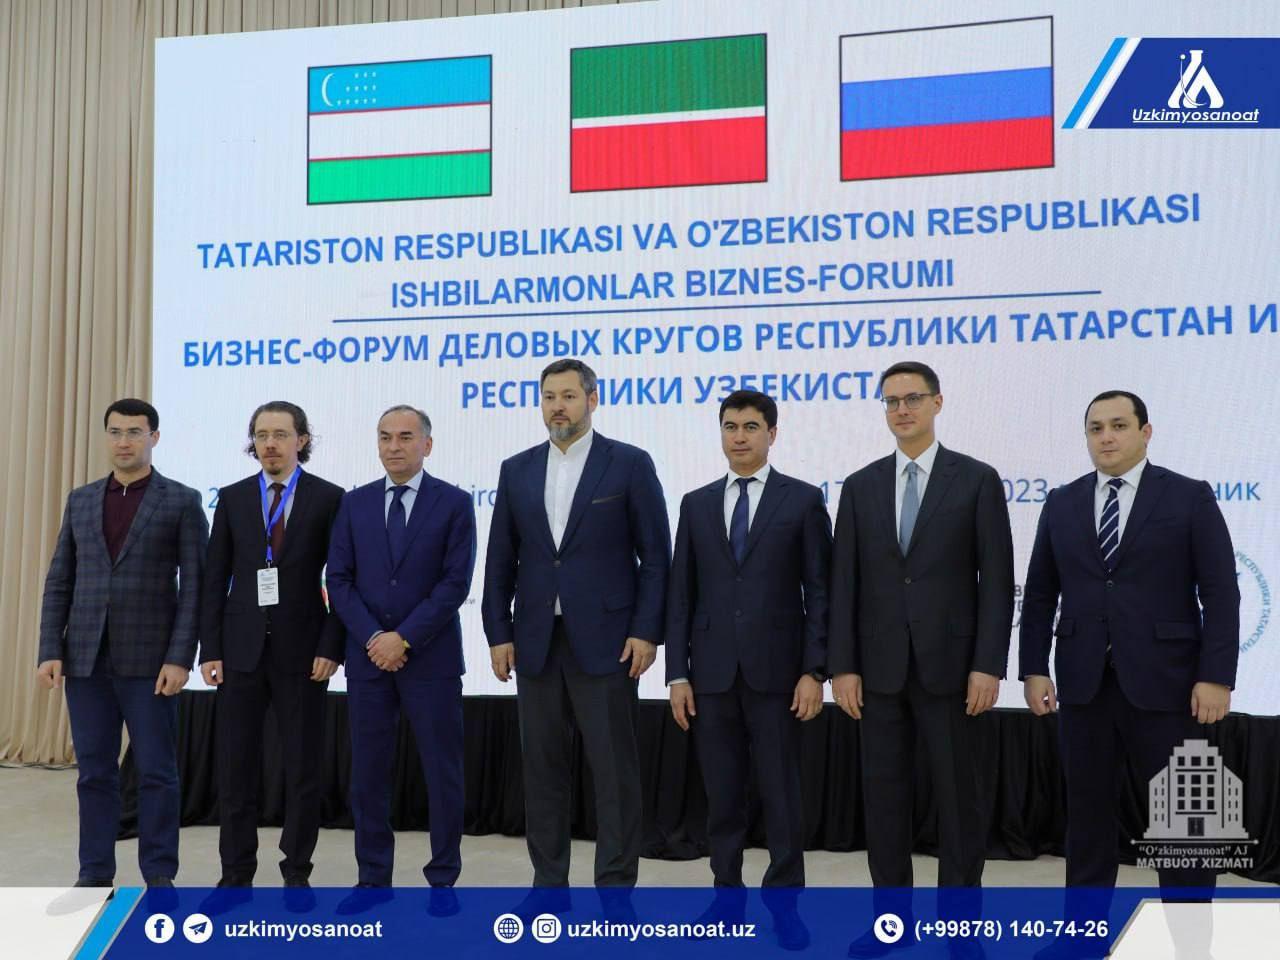 Узбекистан и Татарстан проводят бизнес-форум